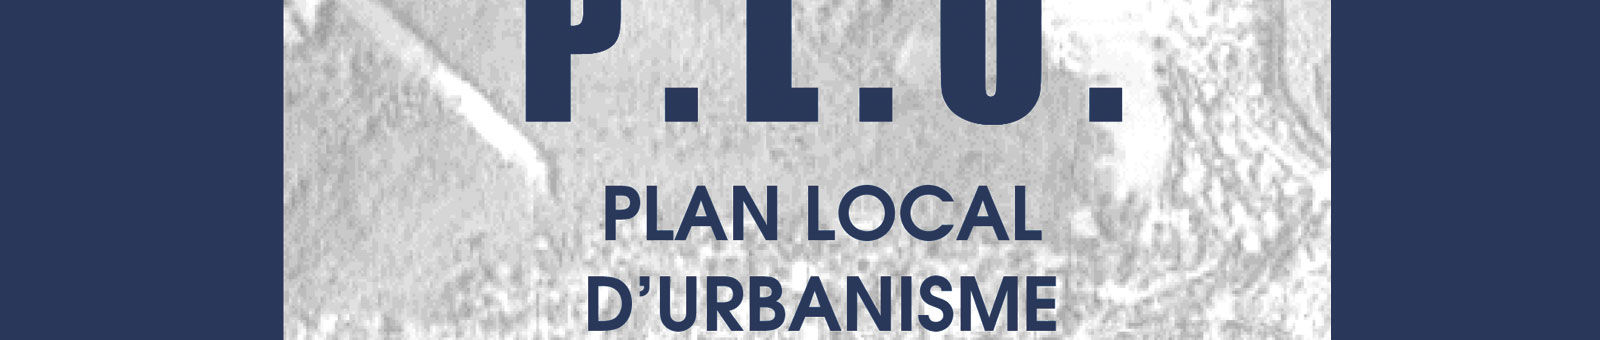 Le Plan Local d'Urbanisme de Gif-sur-Yvette (PLU).